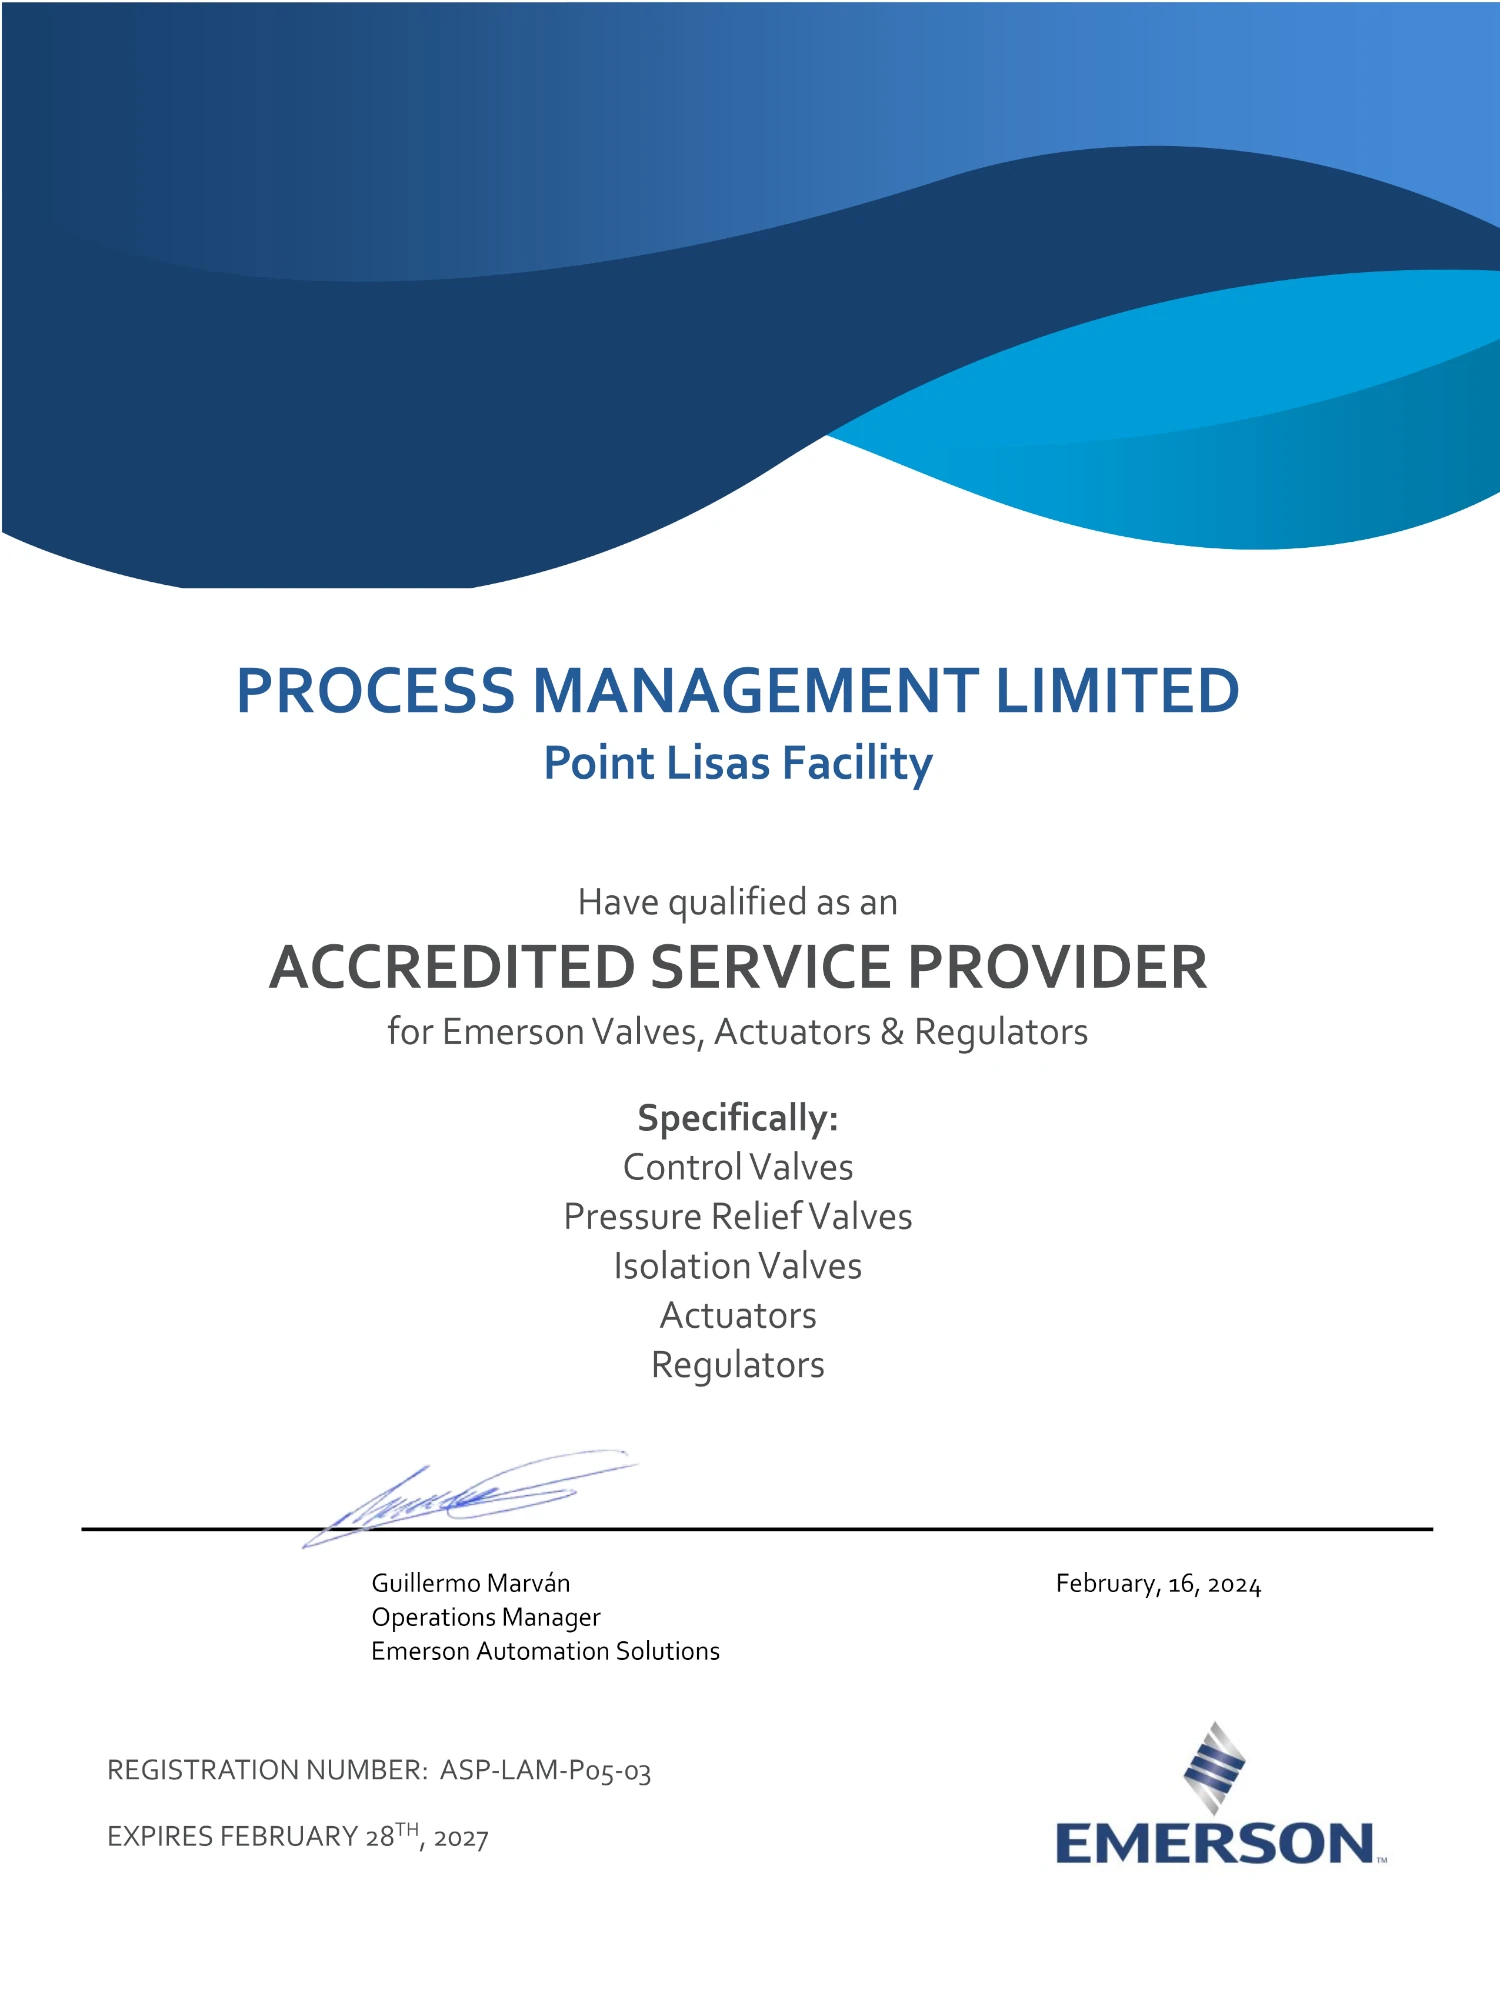 PML ASP Certificate Feb 2024